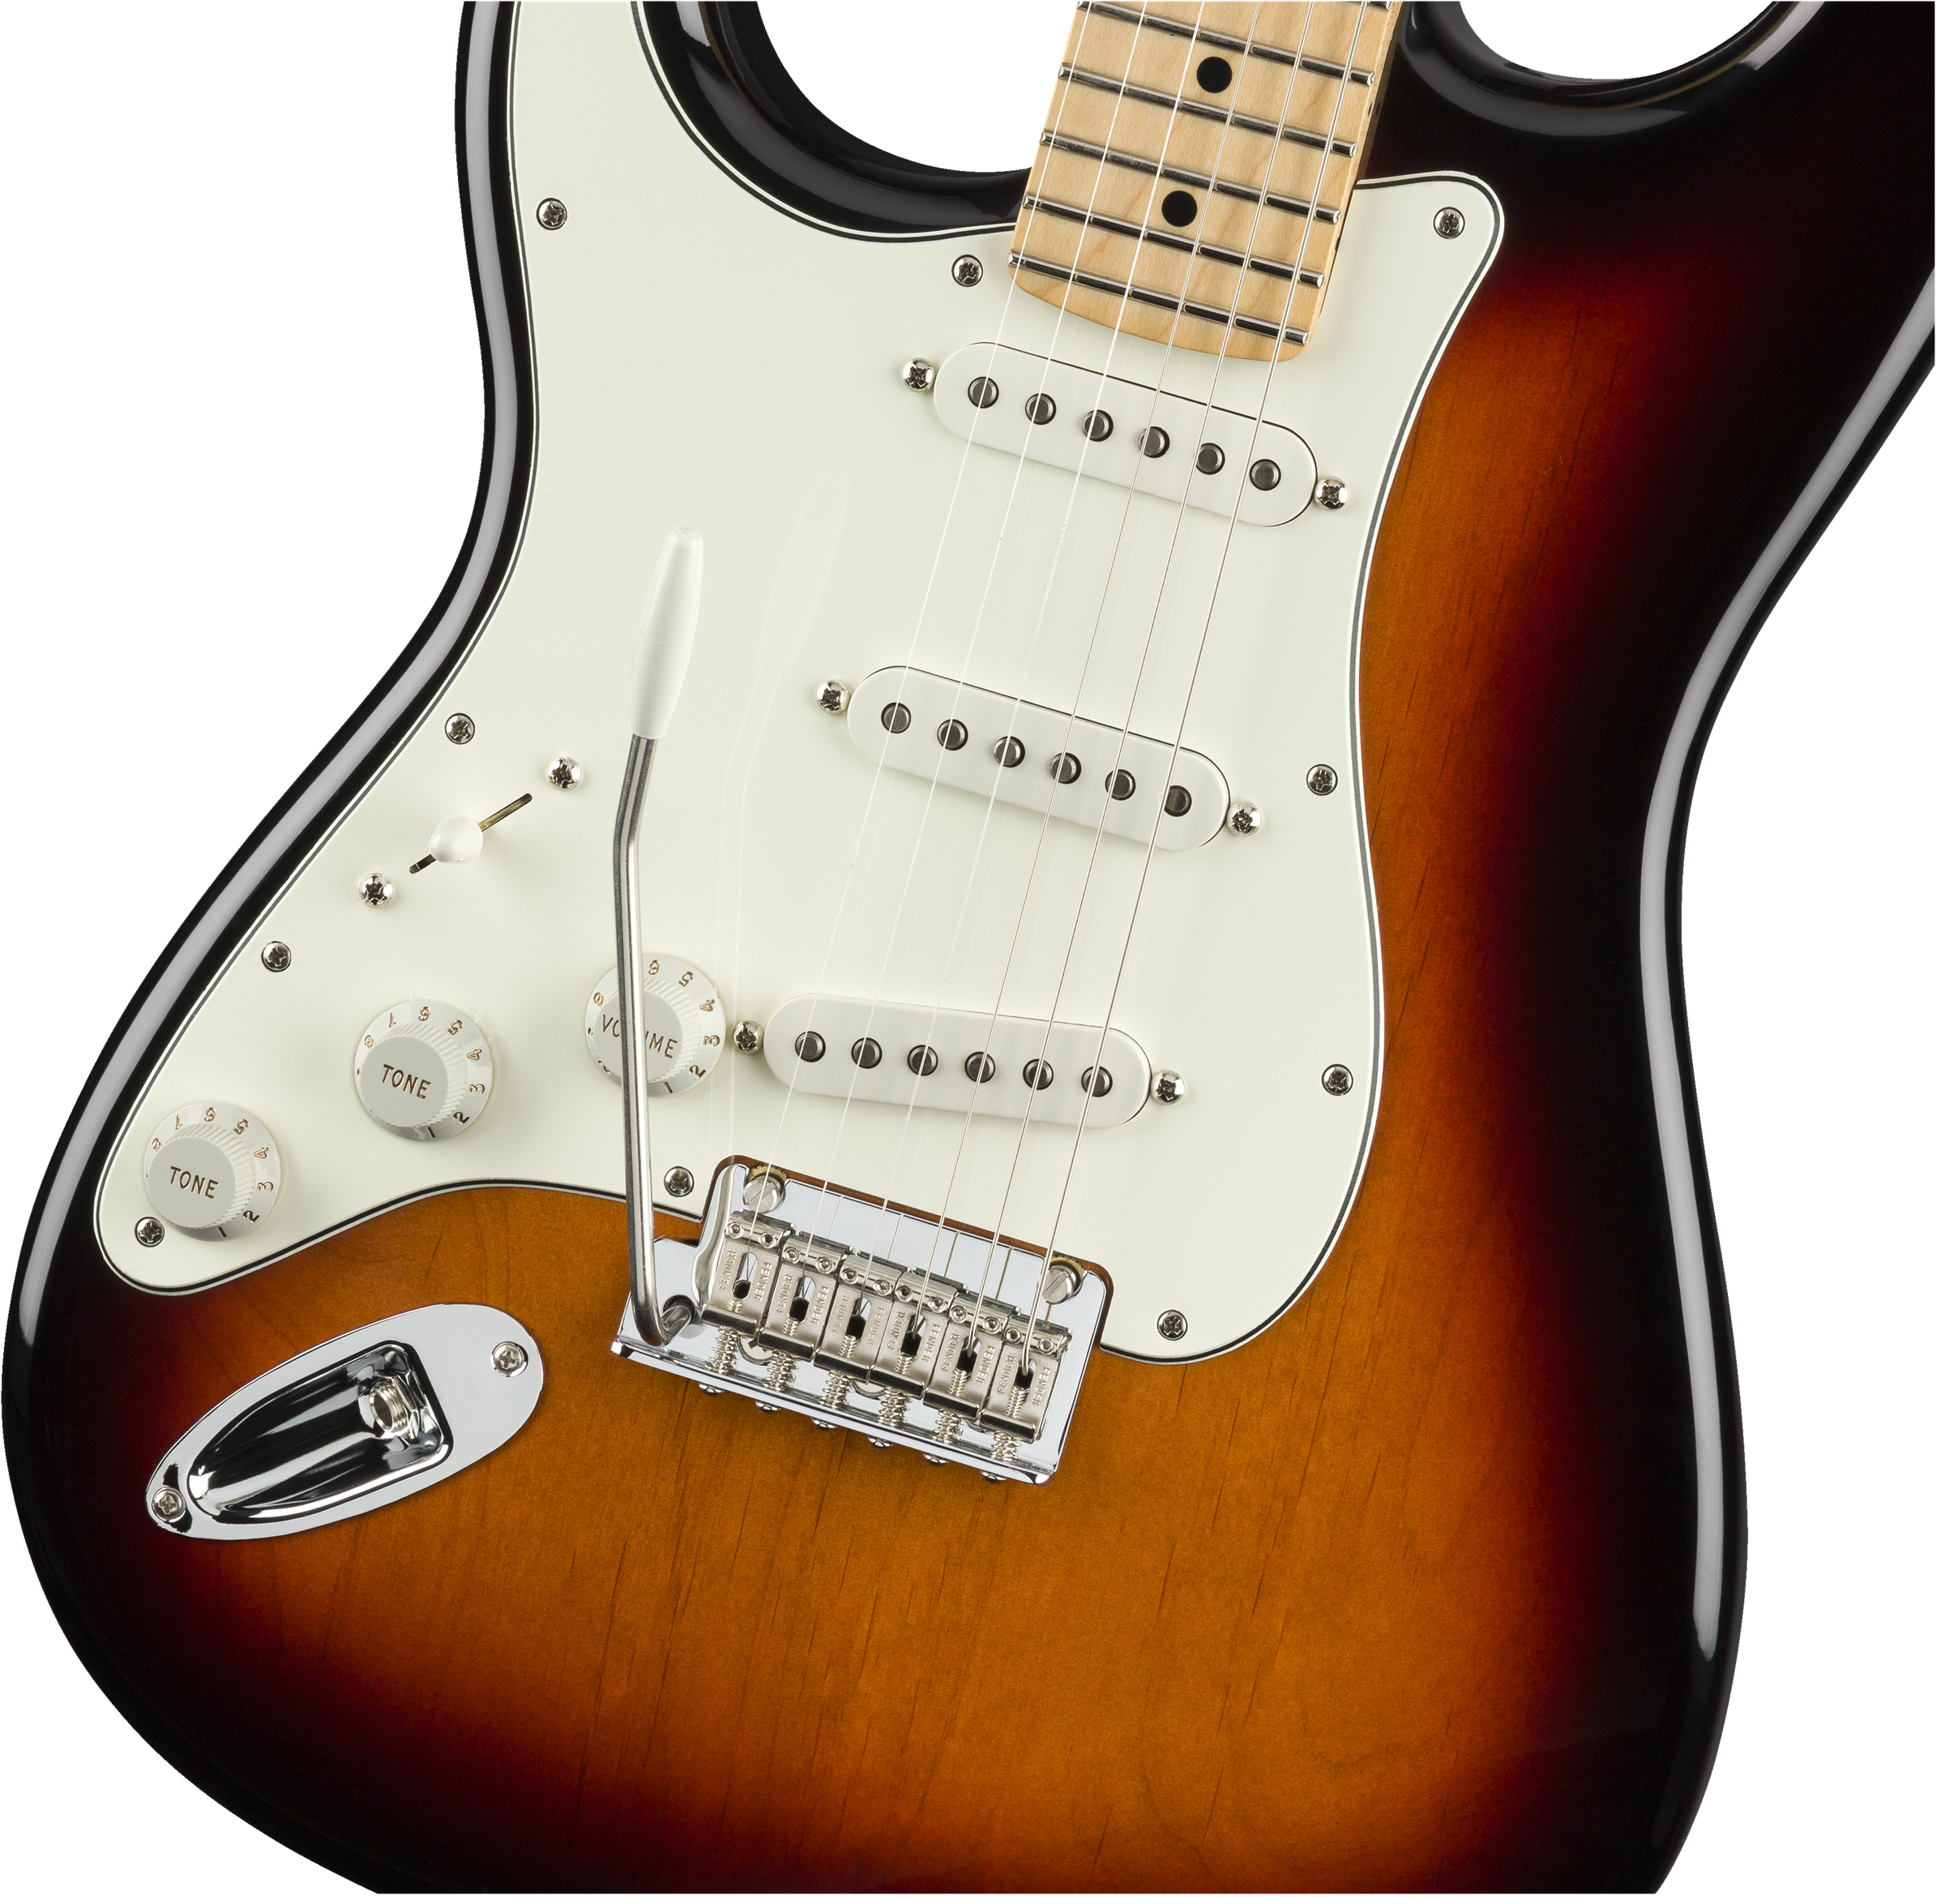 Fender Player Stratocaster® Left-Handed, Maple Fingerboard, 3-Color Sunburst